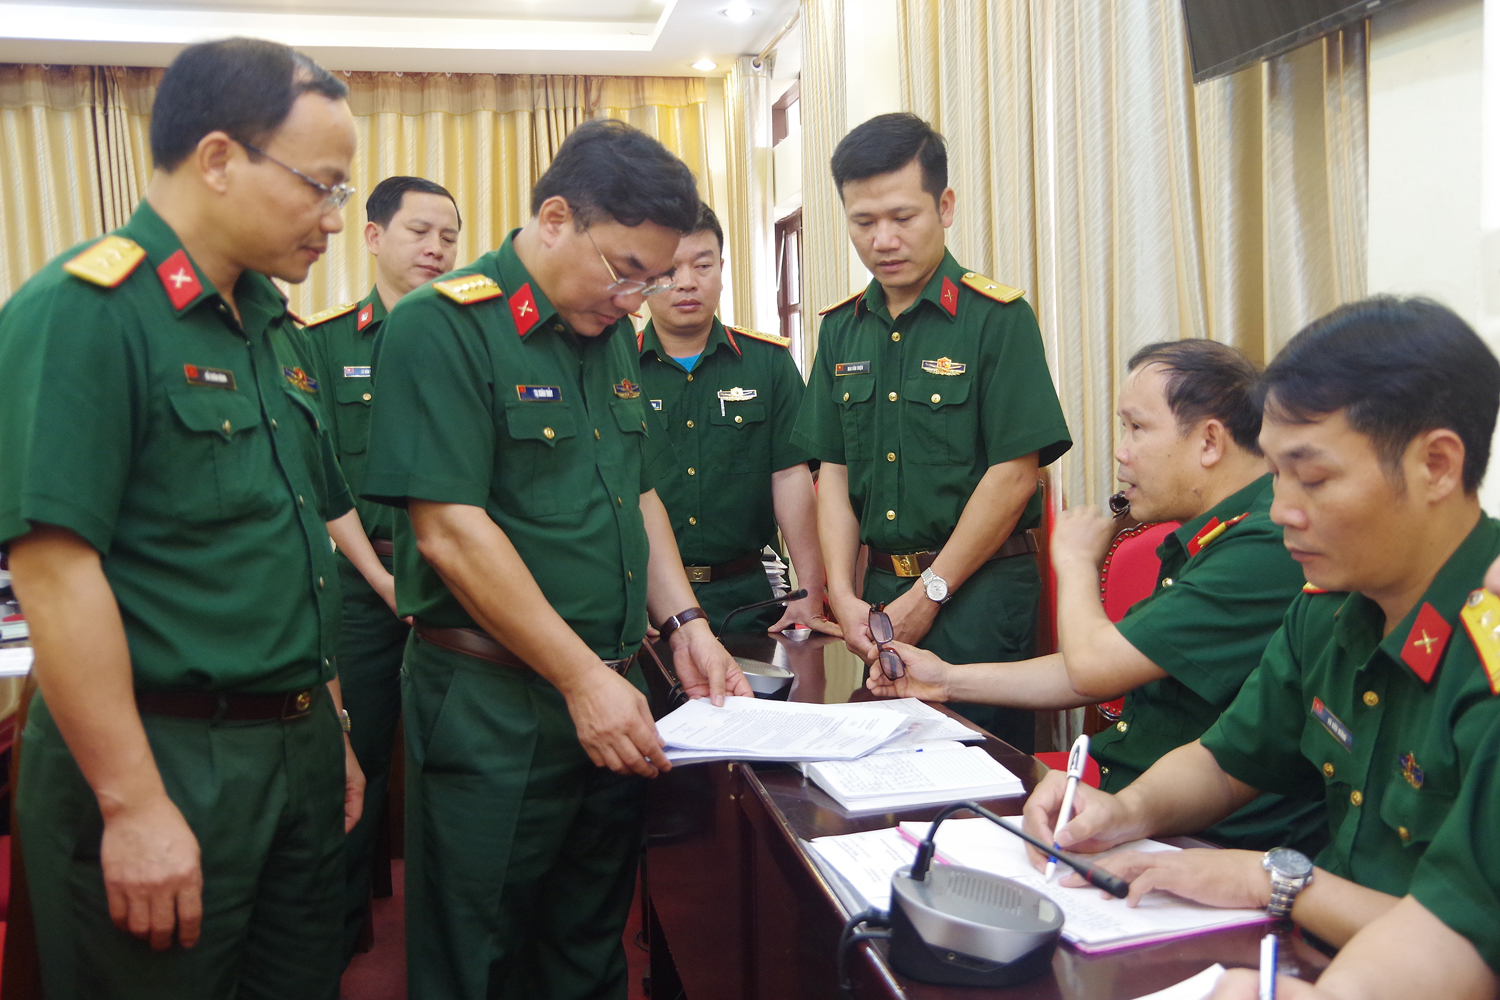 Đại tá Tạ Xuân Thủy, Phó Cục trưởng Cục 71/ Tổng cục II (đứng thứ 2 bên trái ảnh) kiểm tra sổ sách của Ban quân báo, trinh sát Bộ CHQS tỉnh.